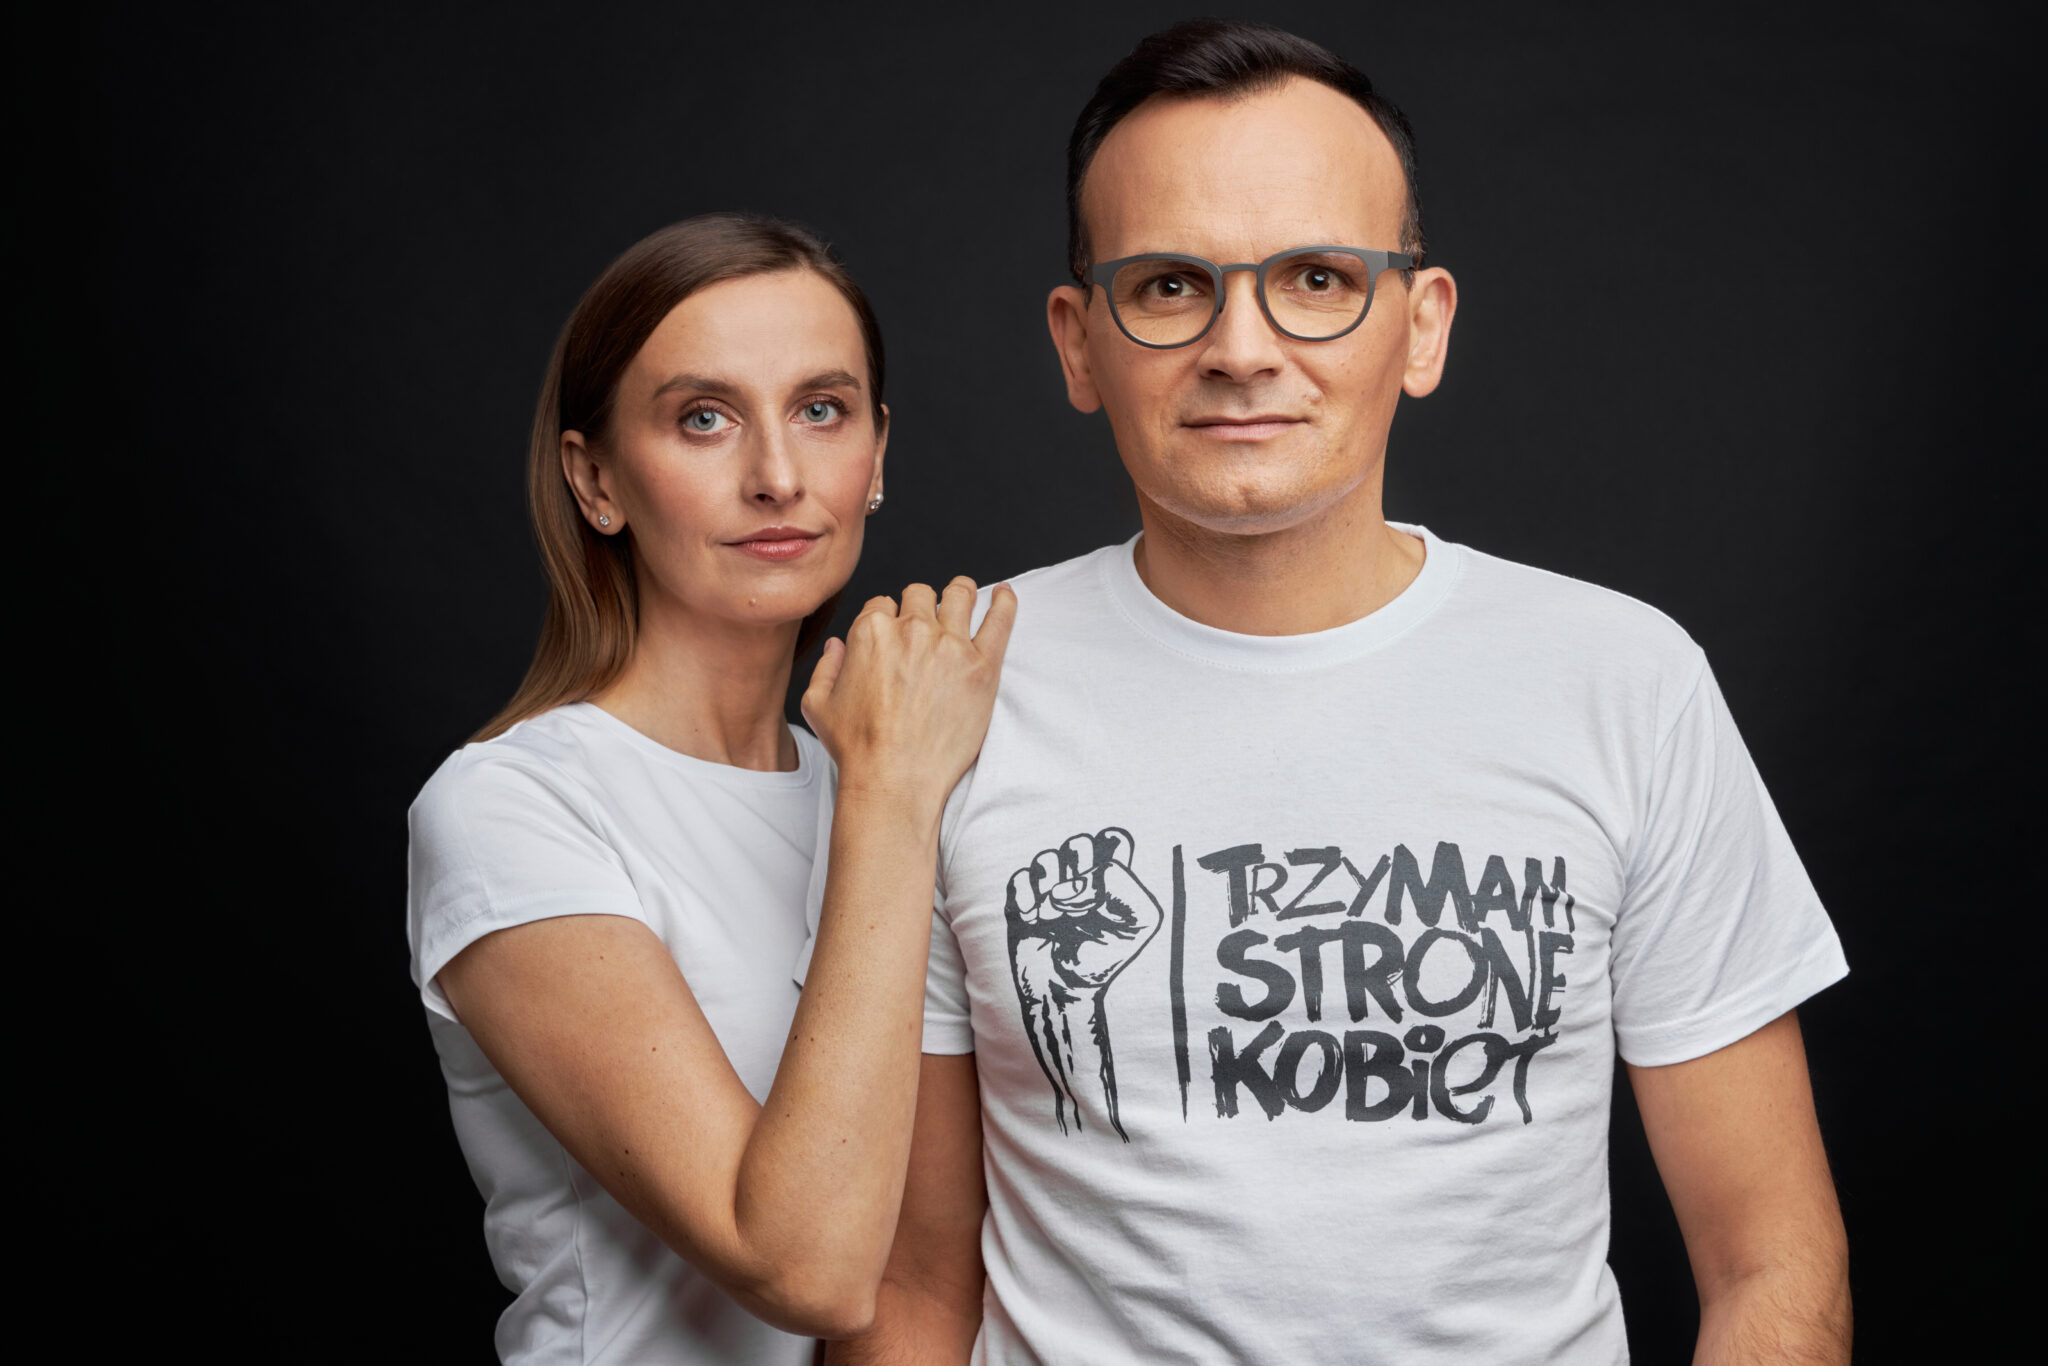 dr. Sylwia Spurek i dr. Marcin Anaszewicz. (Walka z przemocÄ wobec kobiet siÄ opÅaca)